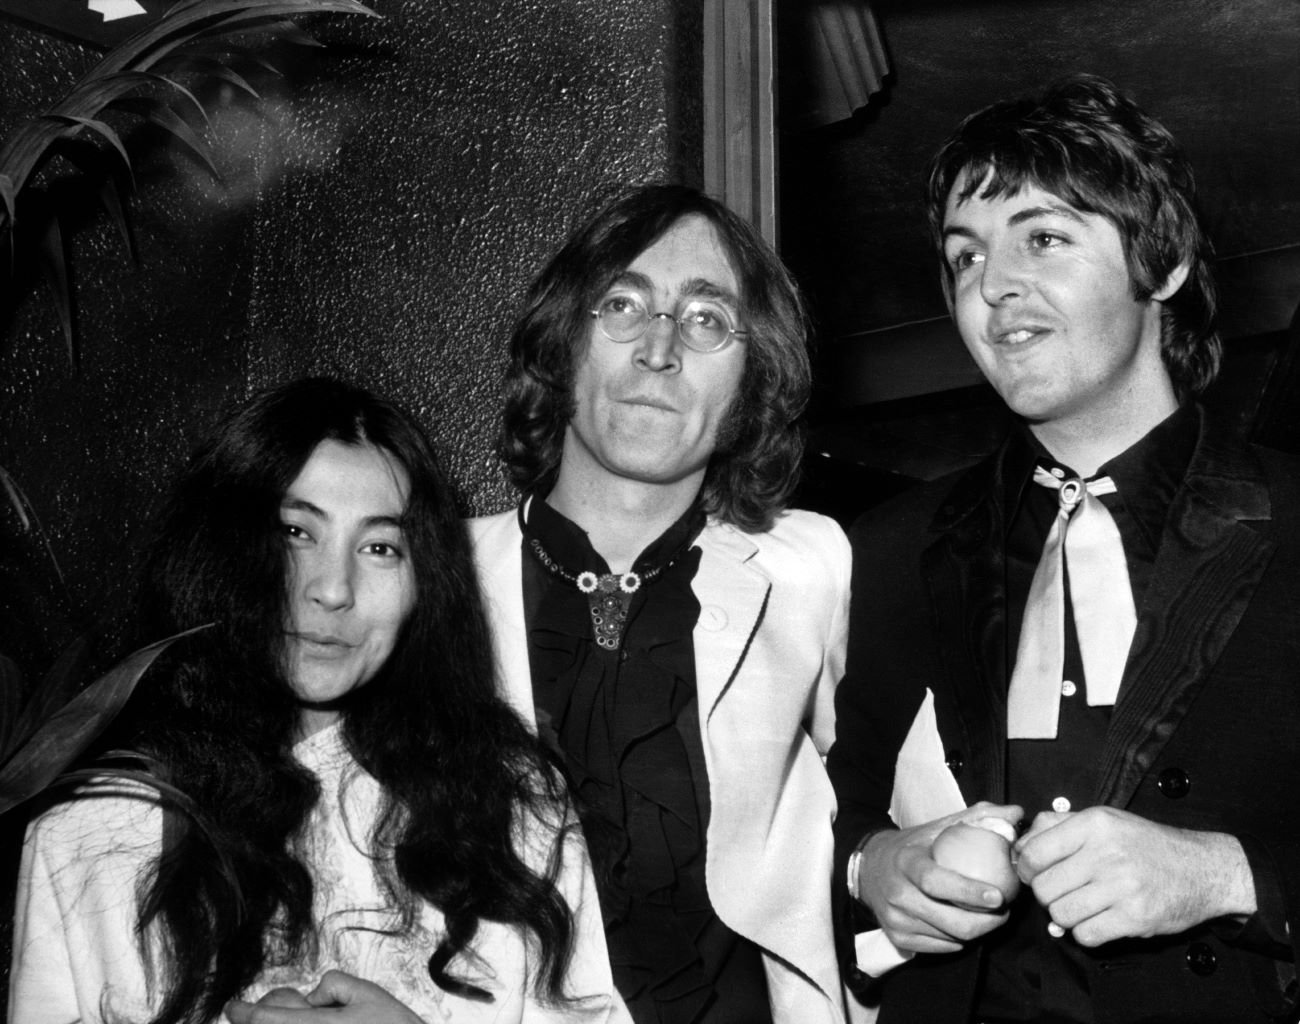 ภาพถ่ายขาวดำของ Yoko Ono, John Lennon และ Paul McCartney กำลังโพสท่าด้วยกัน